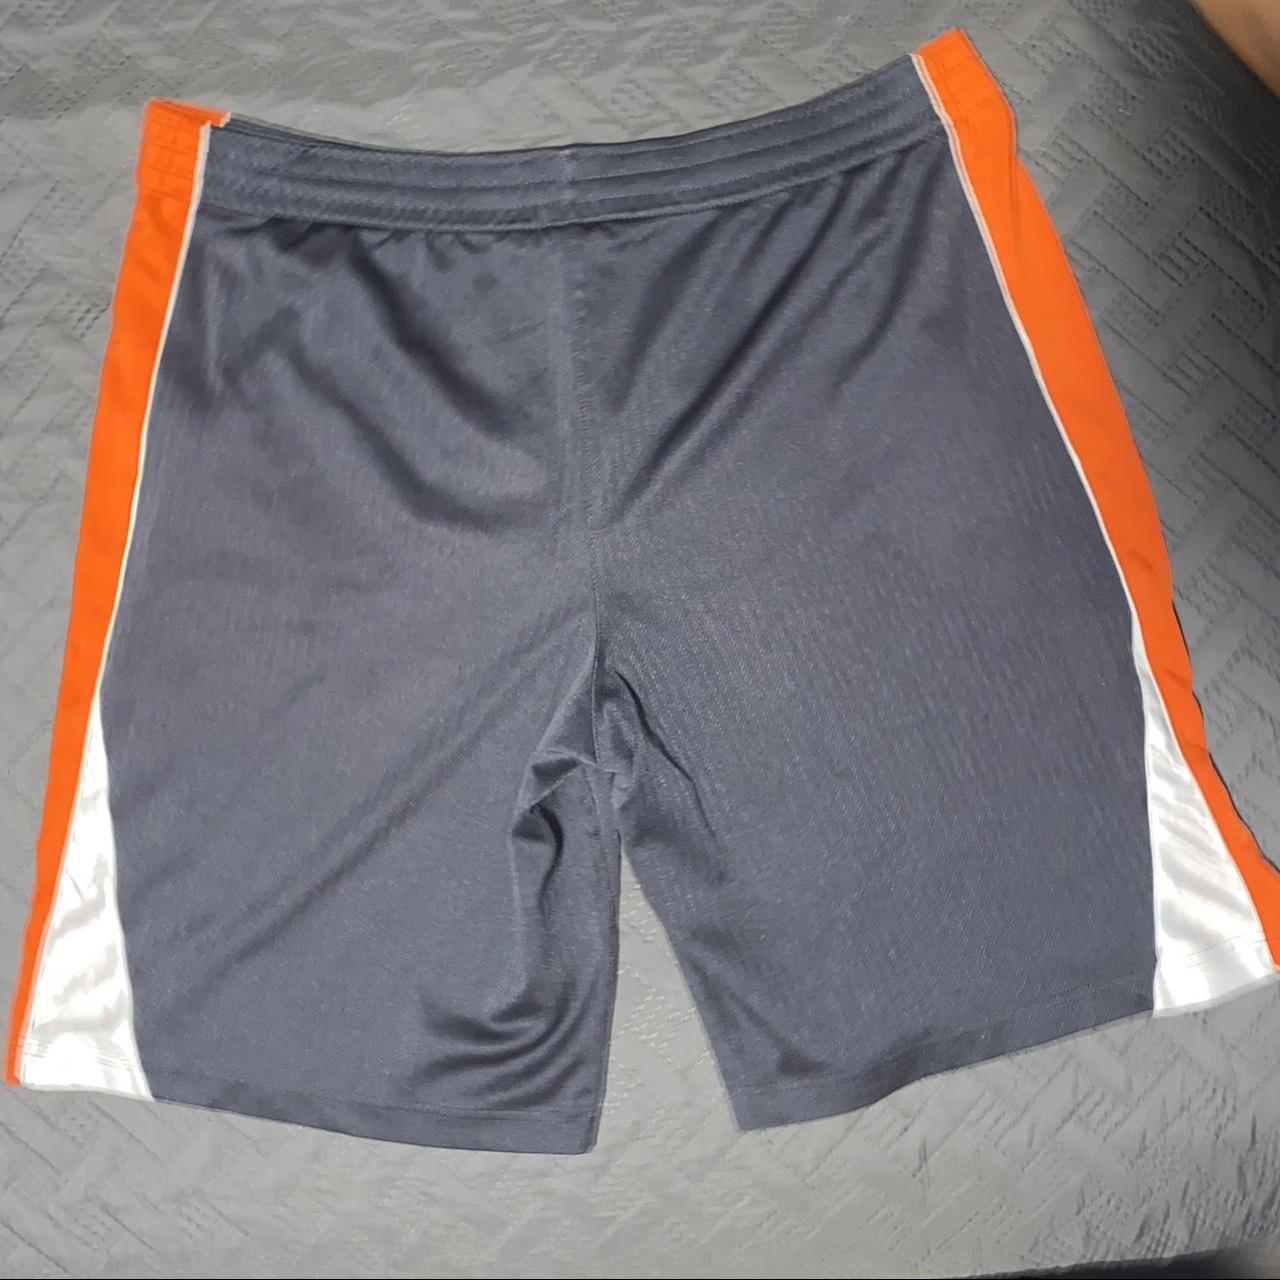 Vintage orange and grey starter shorts, size large.... - Depop